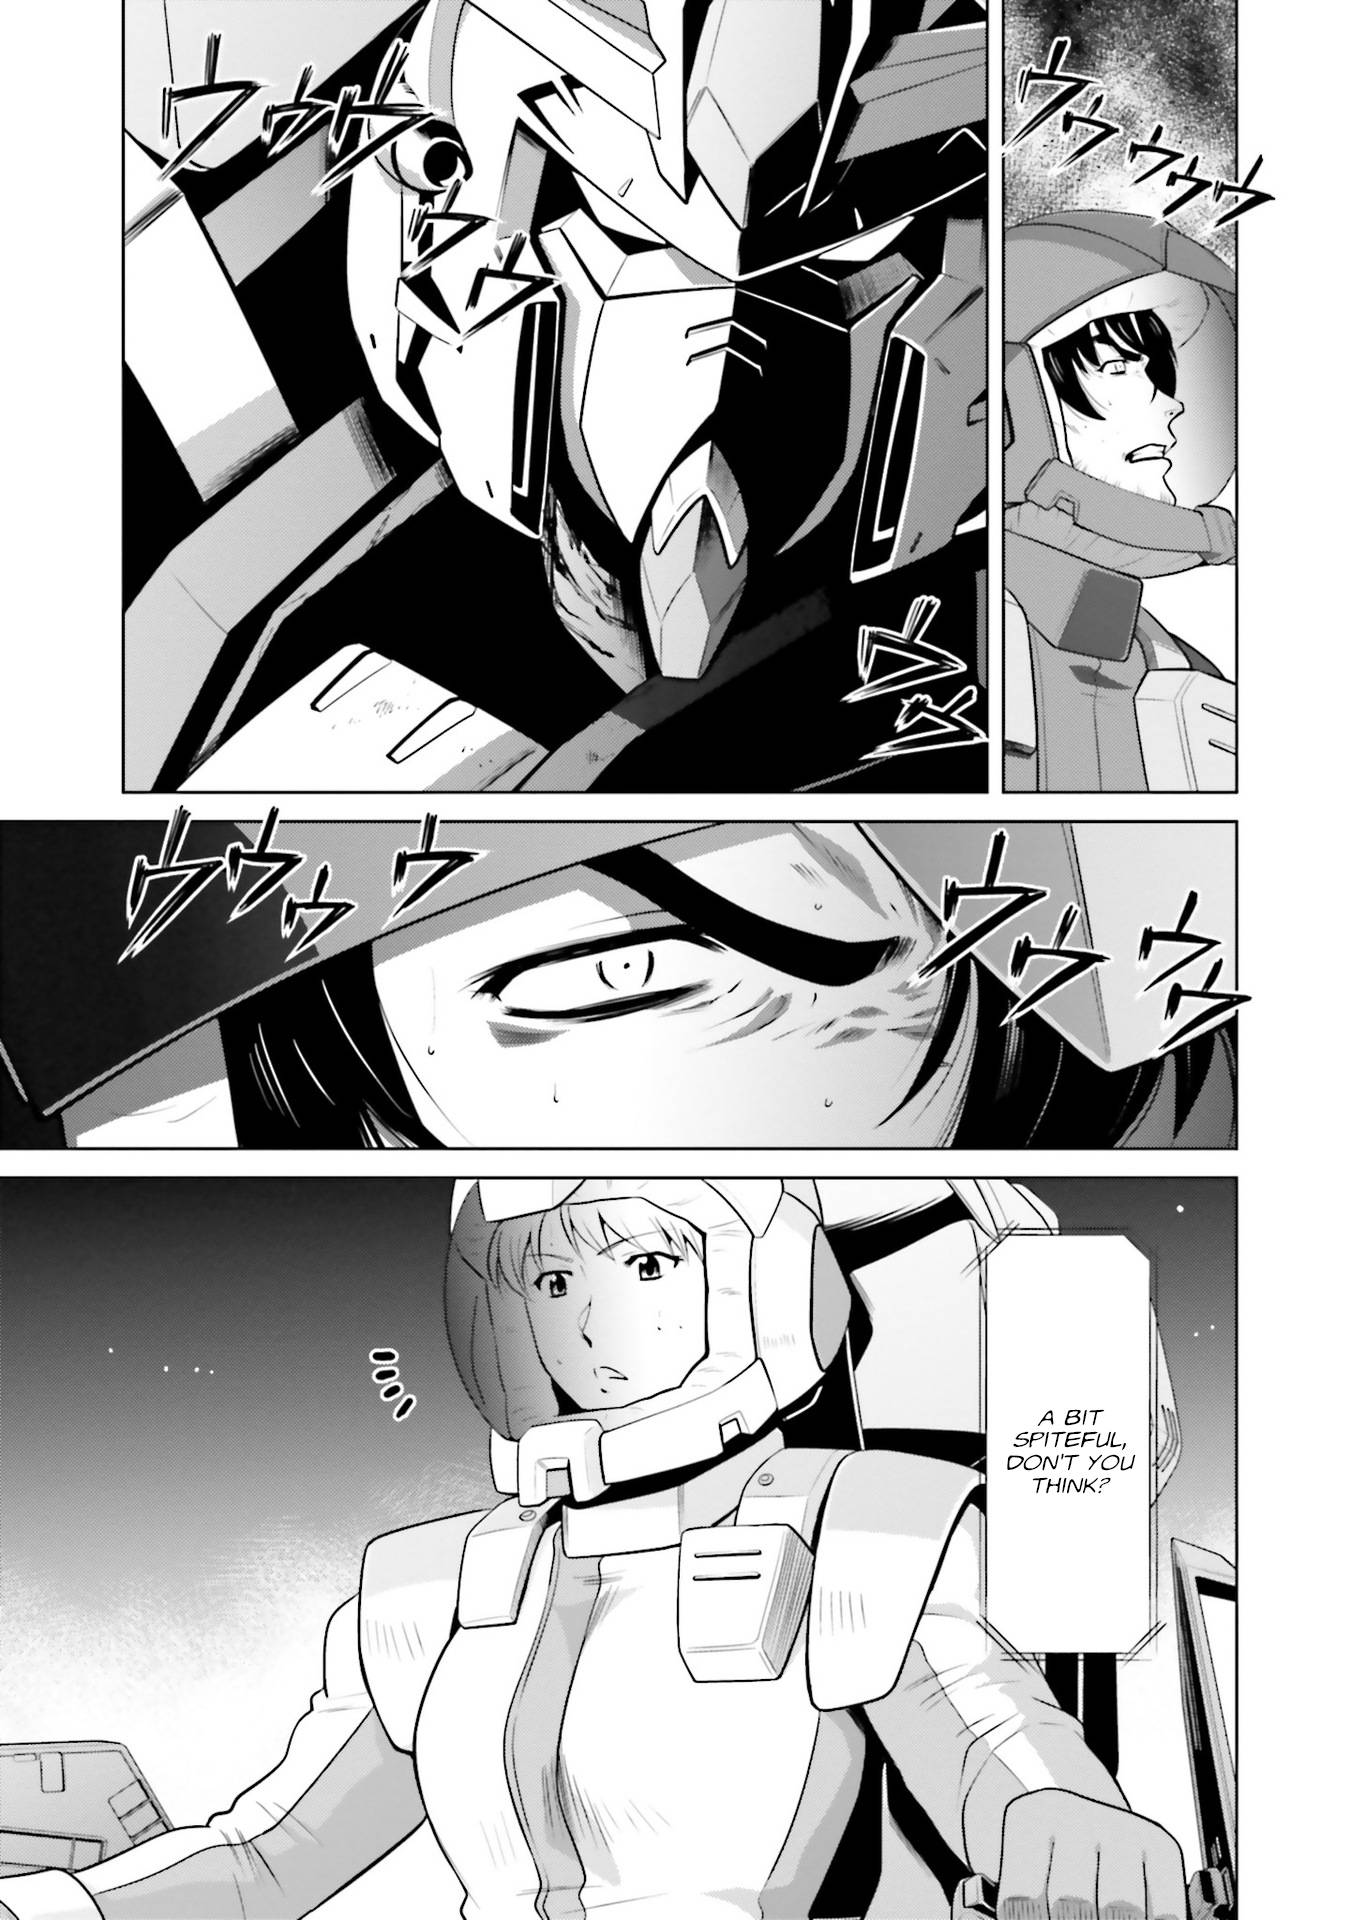 Kidou Senshi Gundam F90 FF - chapter 6 - #3